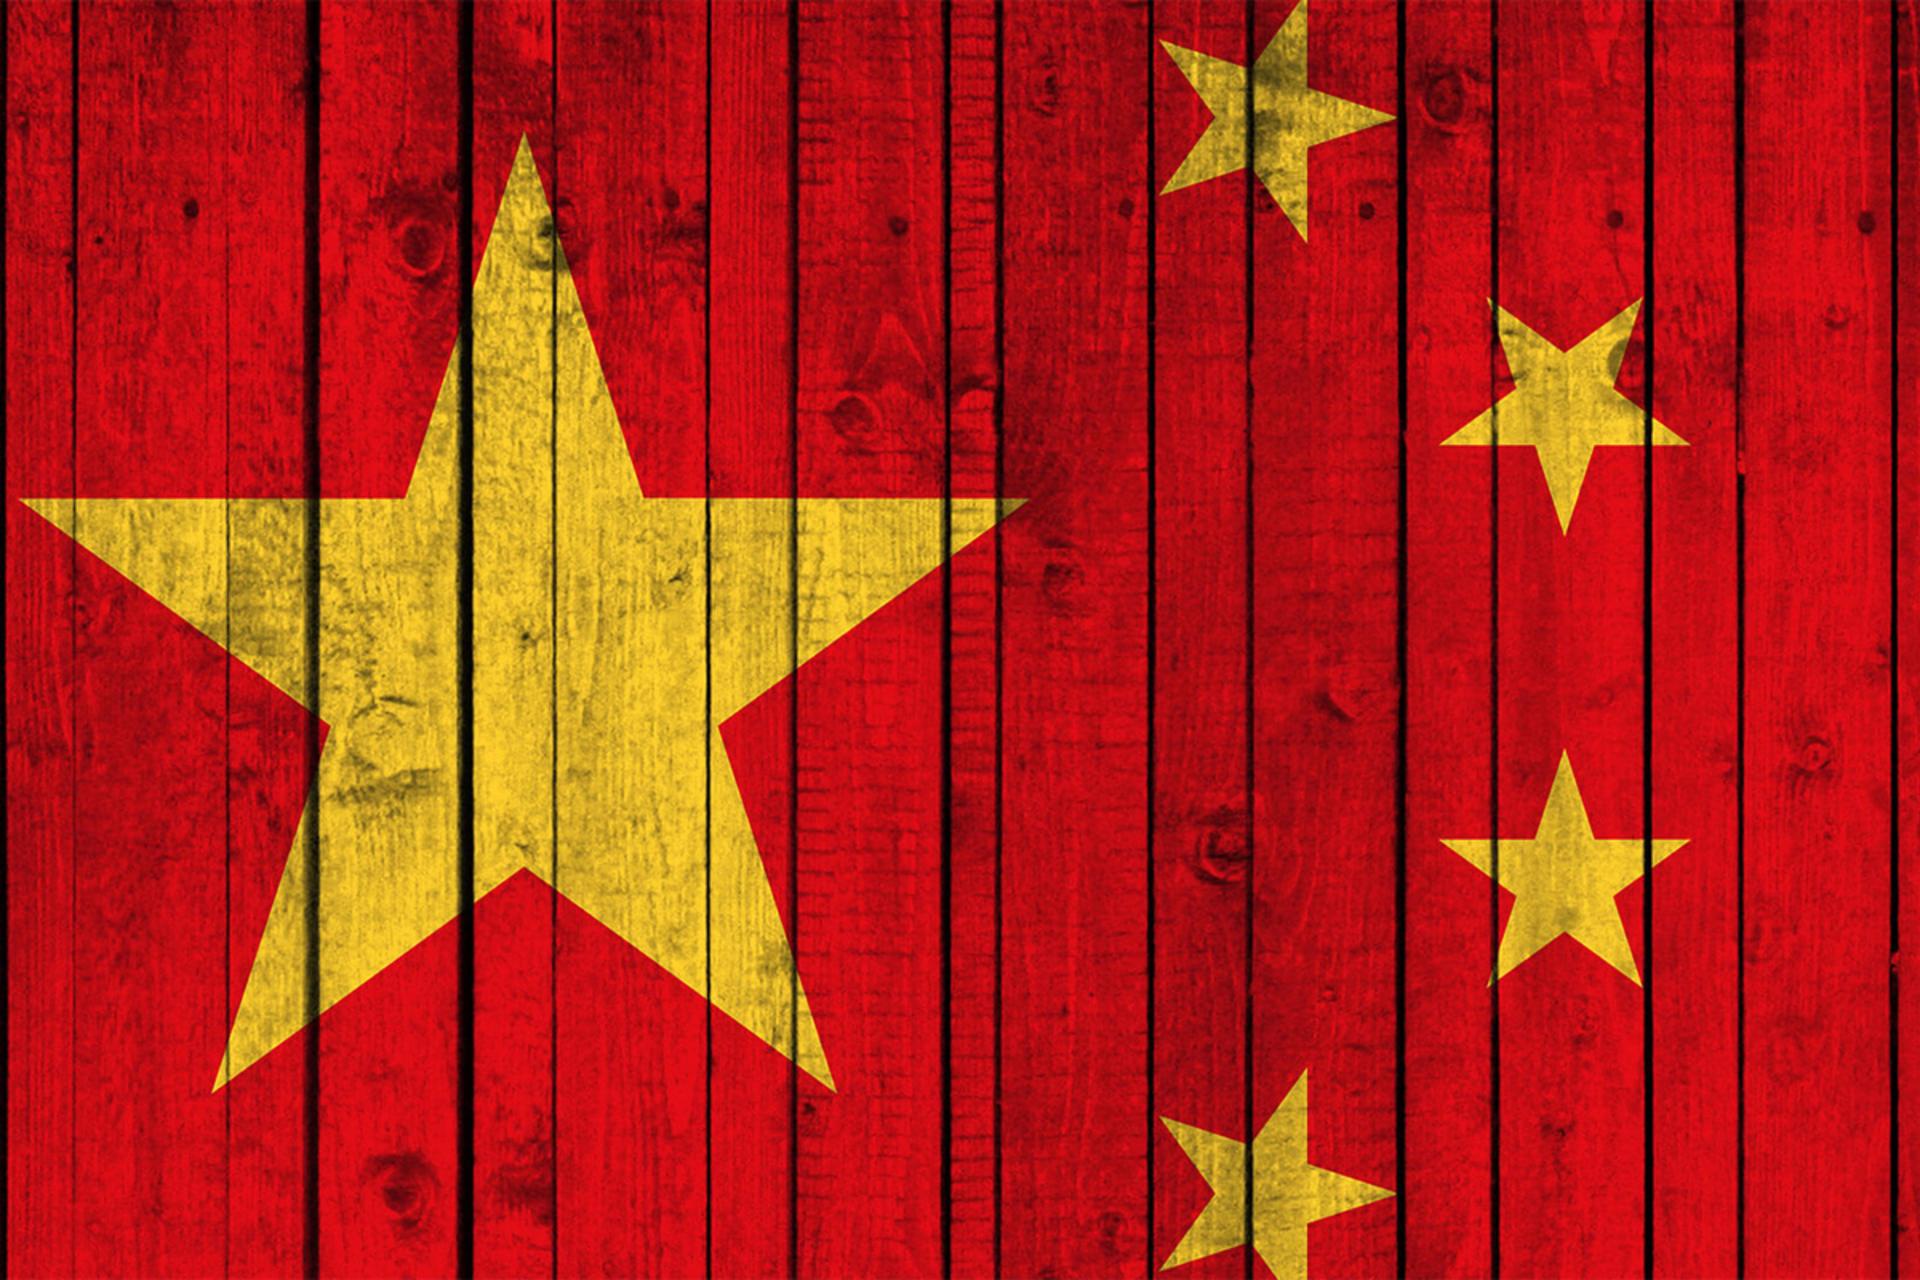 مرجع متخصصين ايران پرچم چين / China Flag ستاره زرد روي ديوار قرمز